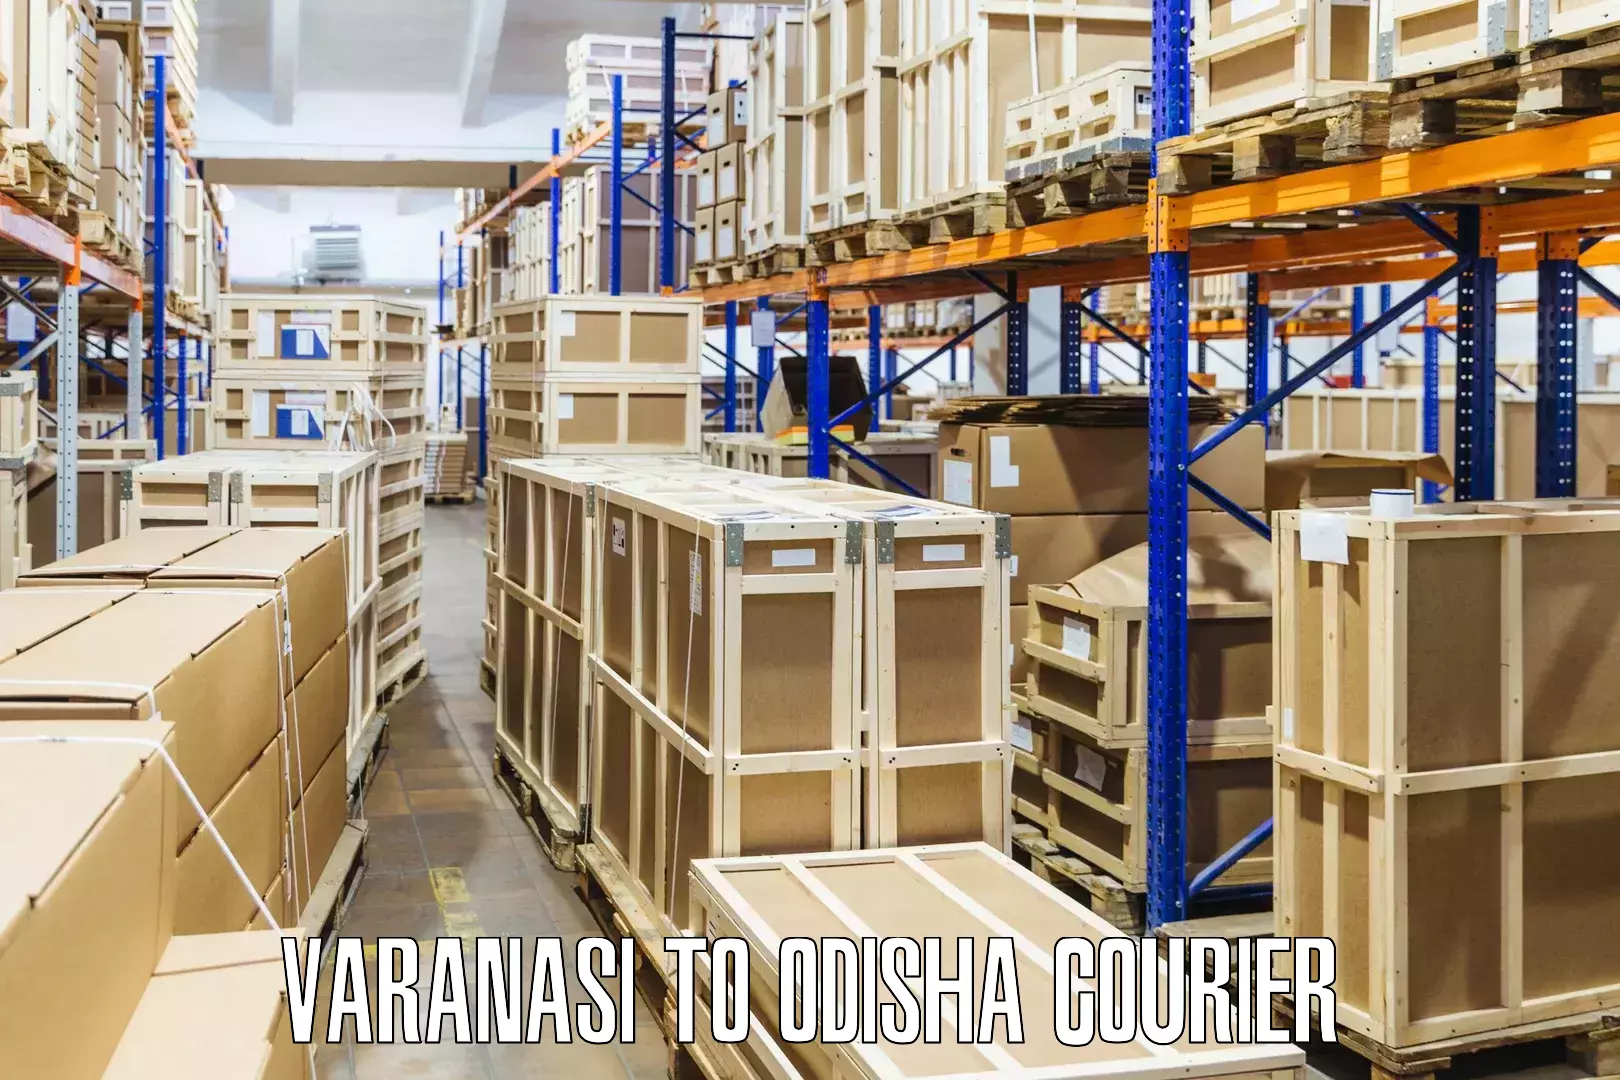 Courier services Varanasi to Odisha